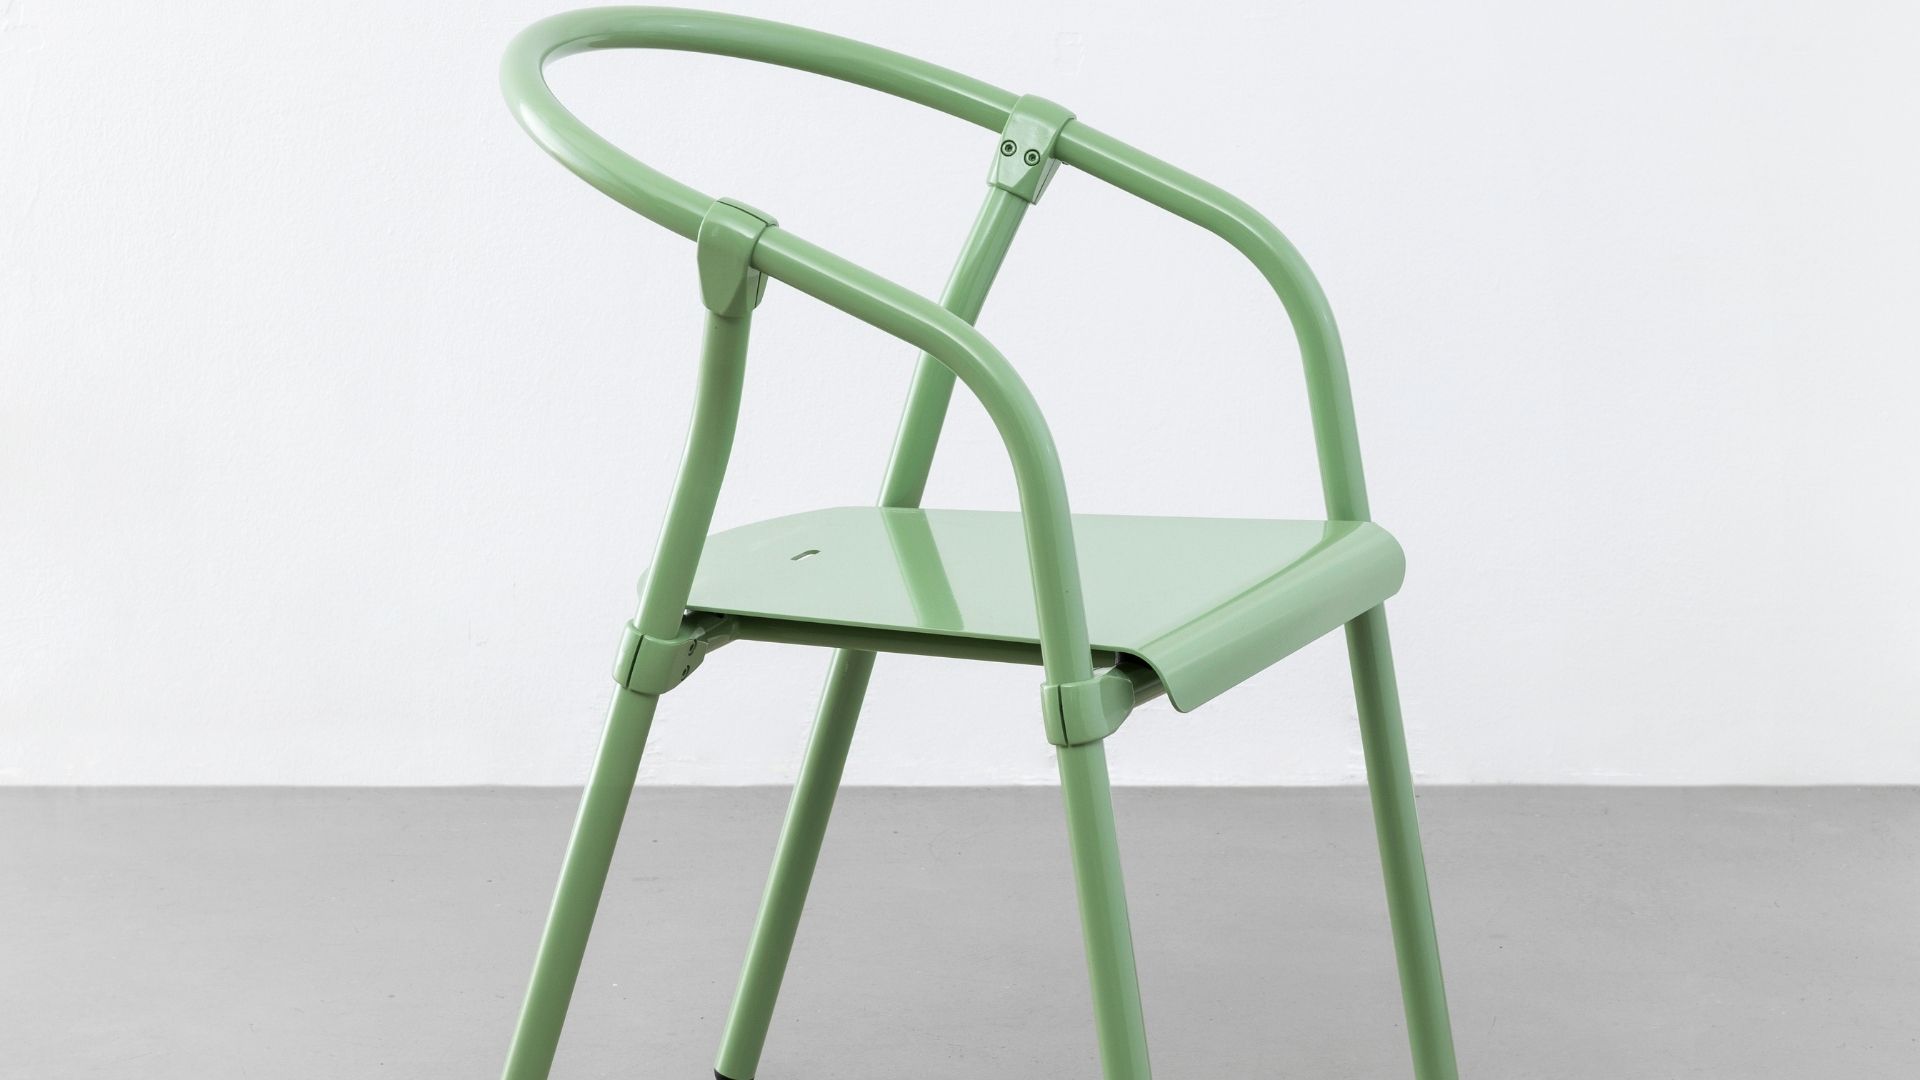 Tube Chair by Klemens Schillinger - cover